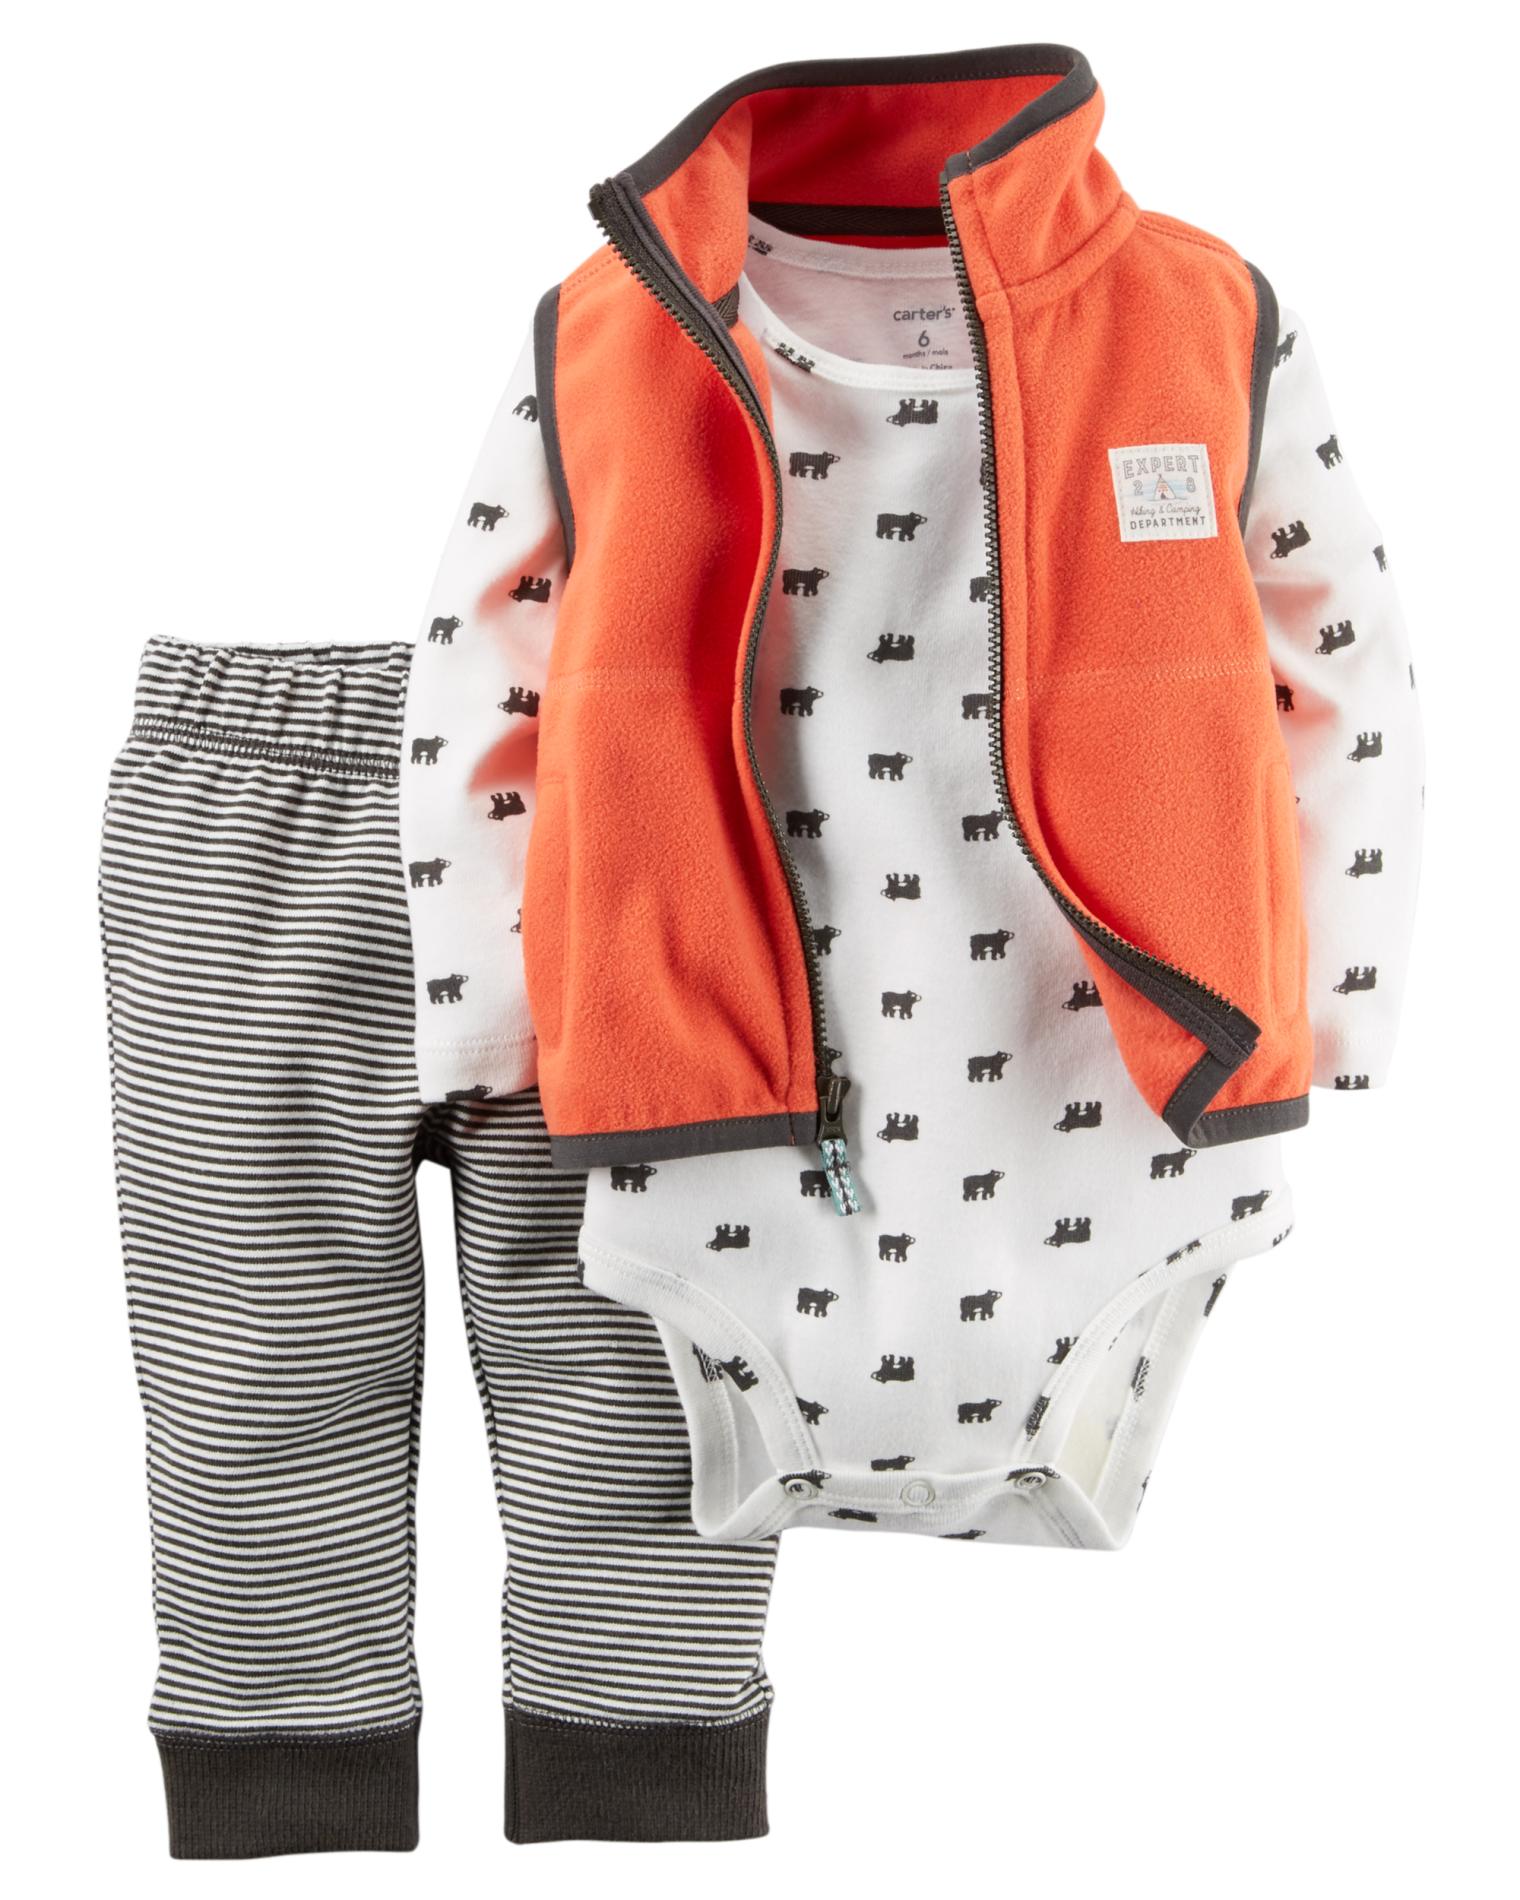 Carter's Newborn & Infant Boys' Vest, Bodysuit & Pants - Moose